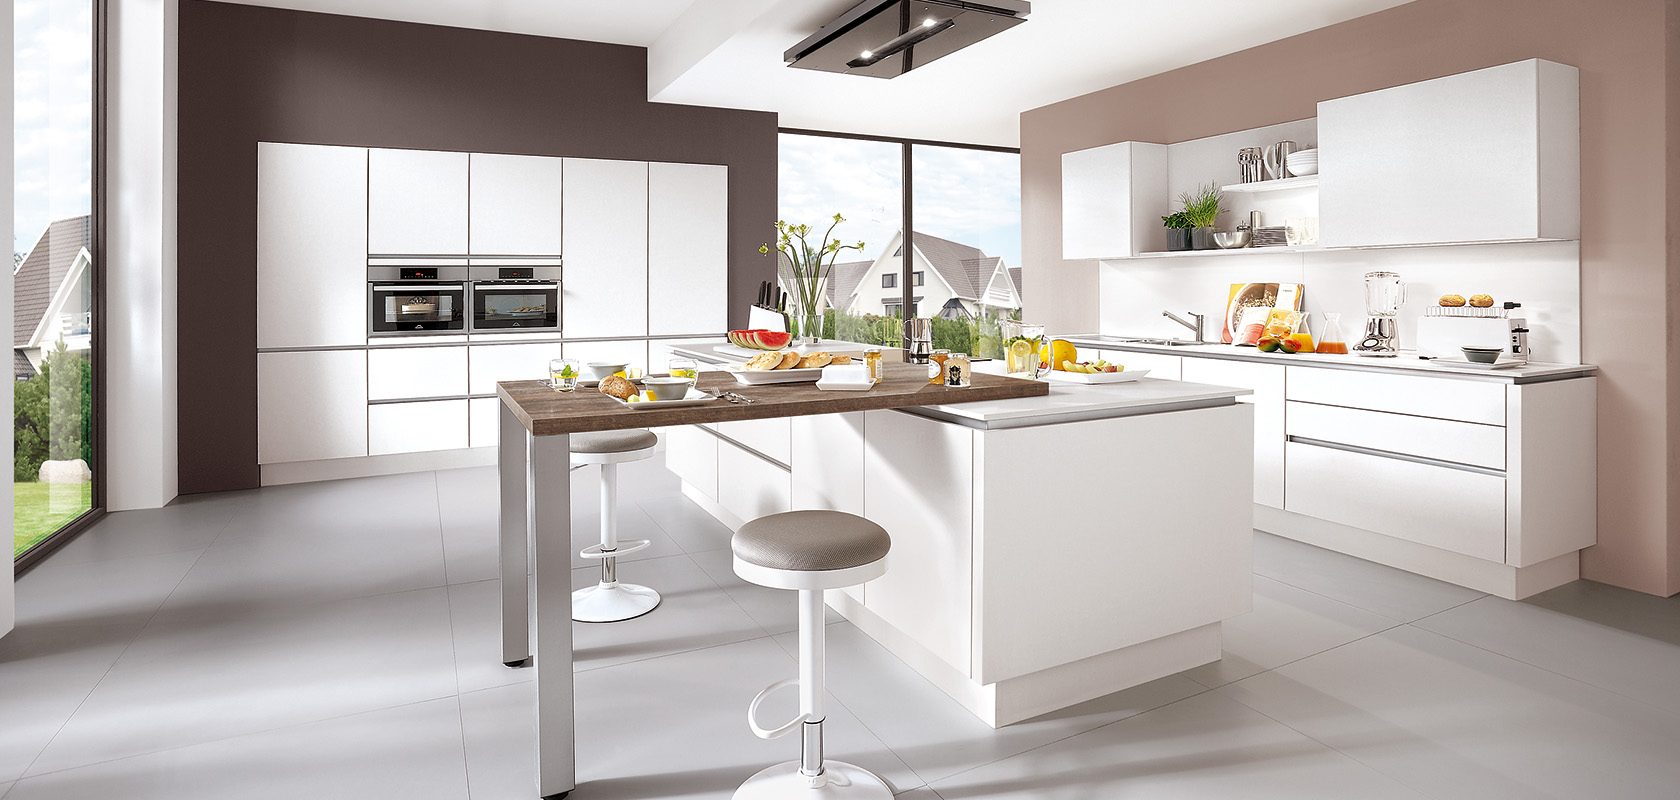 Interior de cocina moderna con encimeras blancas limpias, electrodomésticos integrados elegantes y una barra de desayuno situada frente a grandes ventanas con vistas a un entorno suburbano.